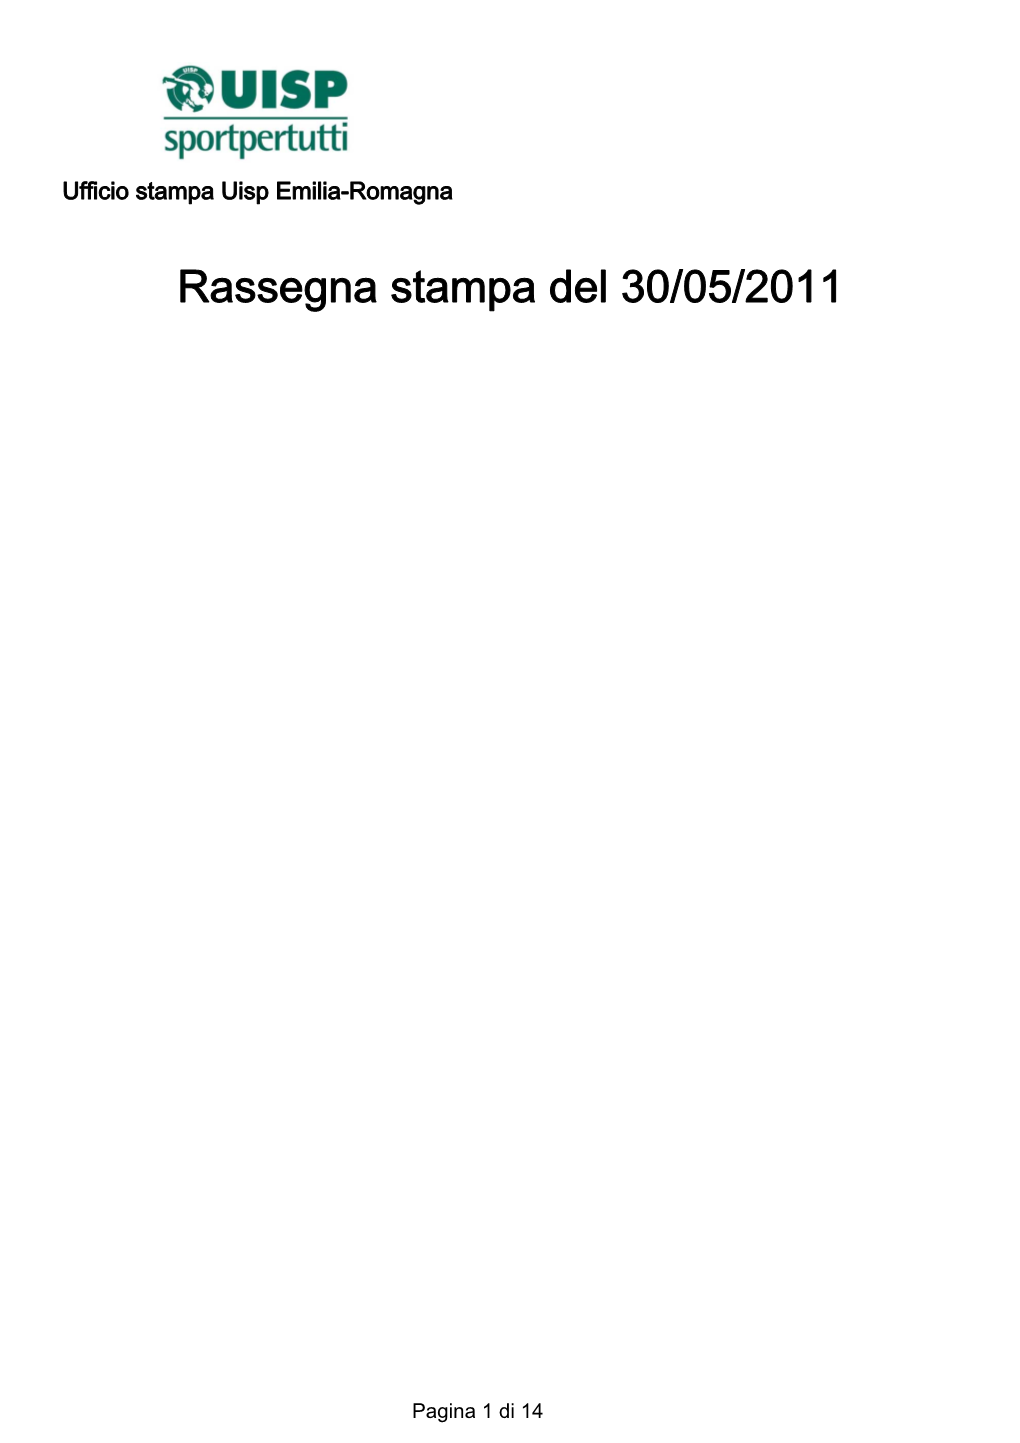 Rassegna Stampa Del 30/05/2011